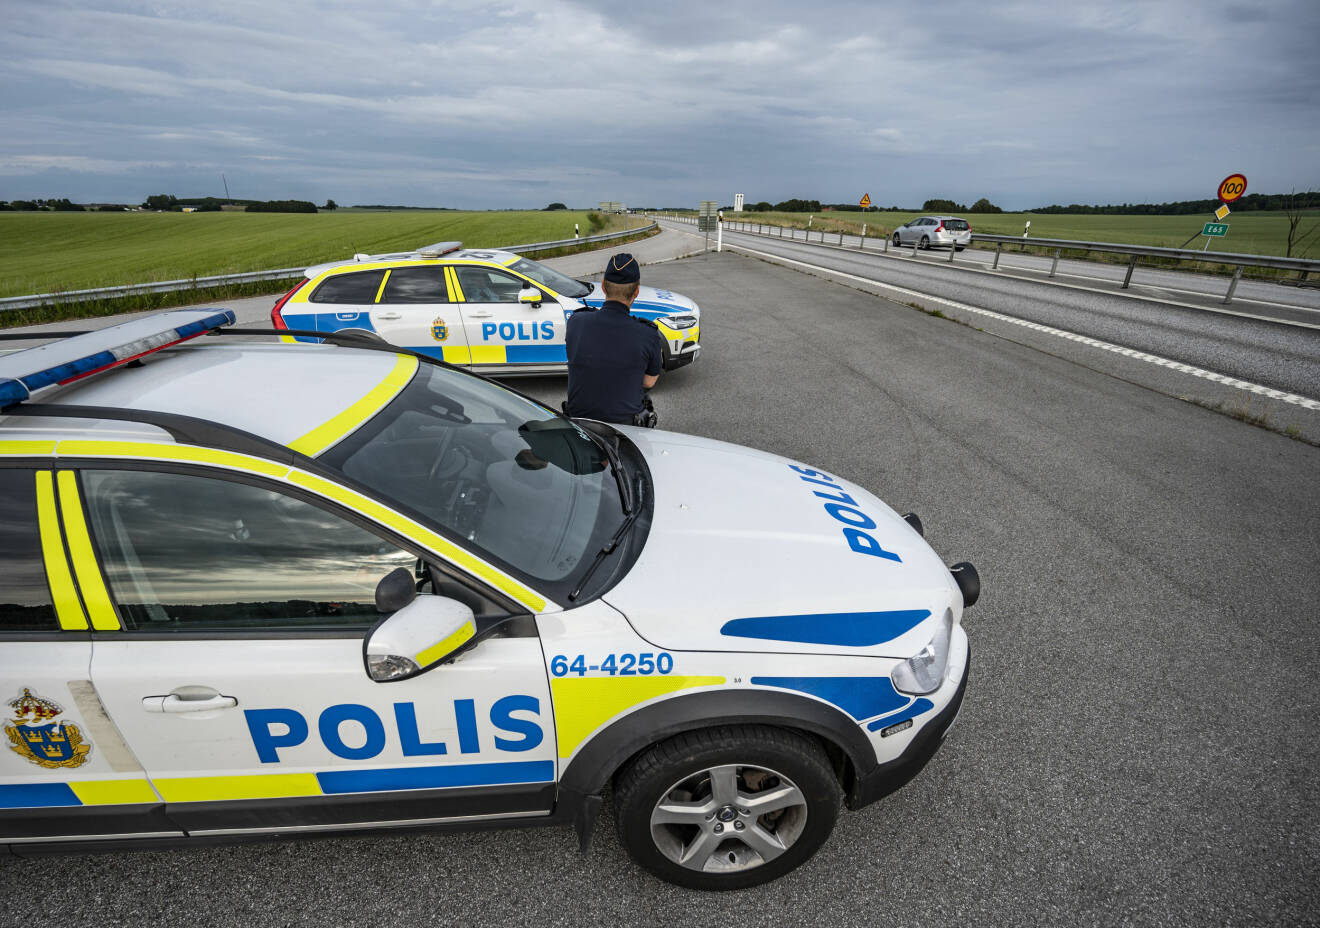 Stenkastare. Polisnärvaro på E 65 mellan Malmö och Ystad